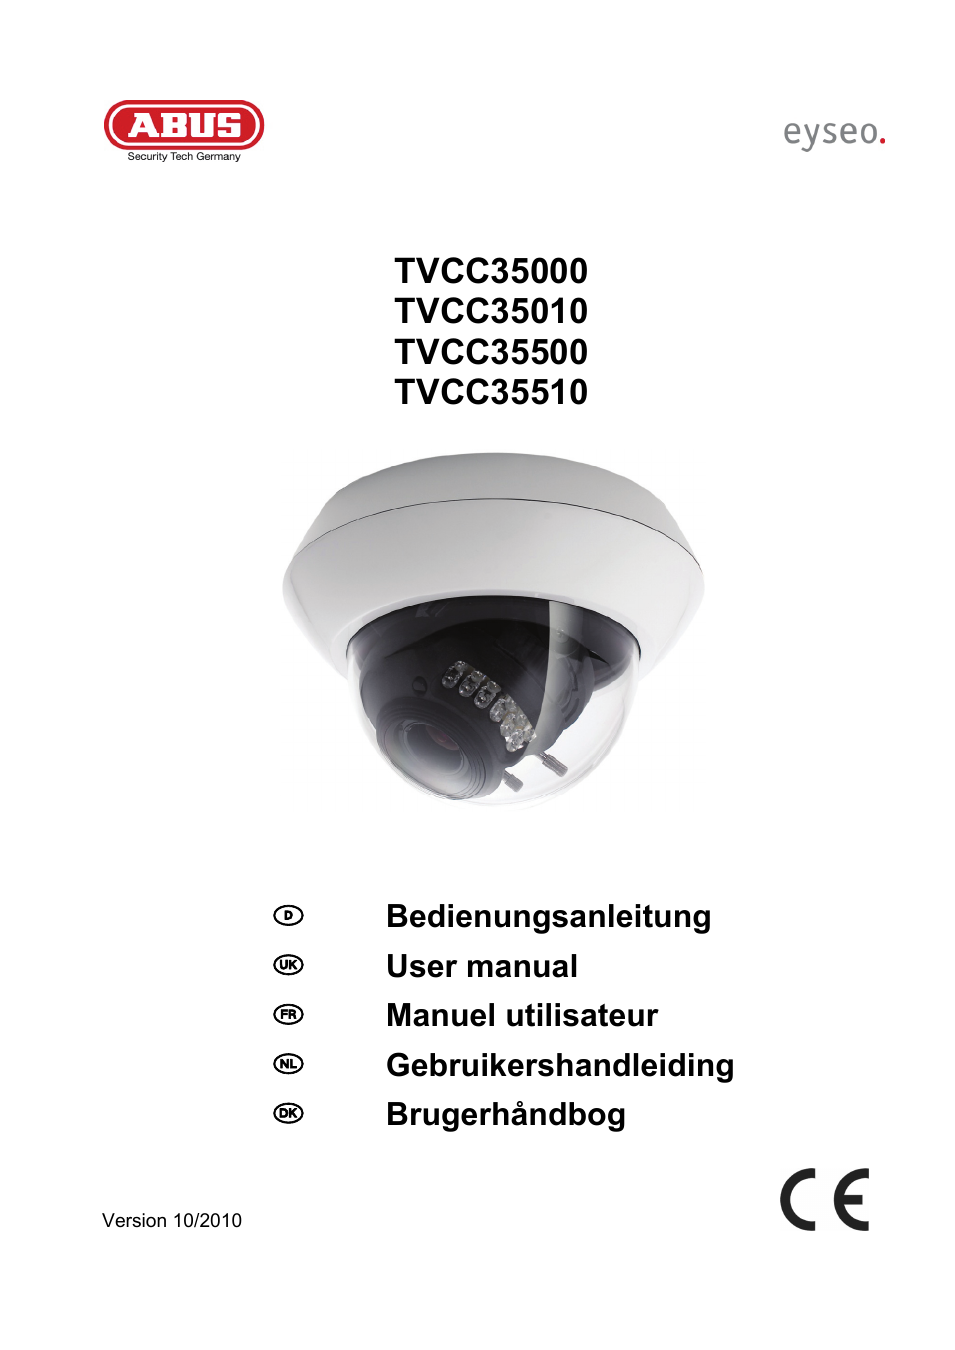 TVCC35510